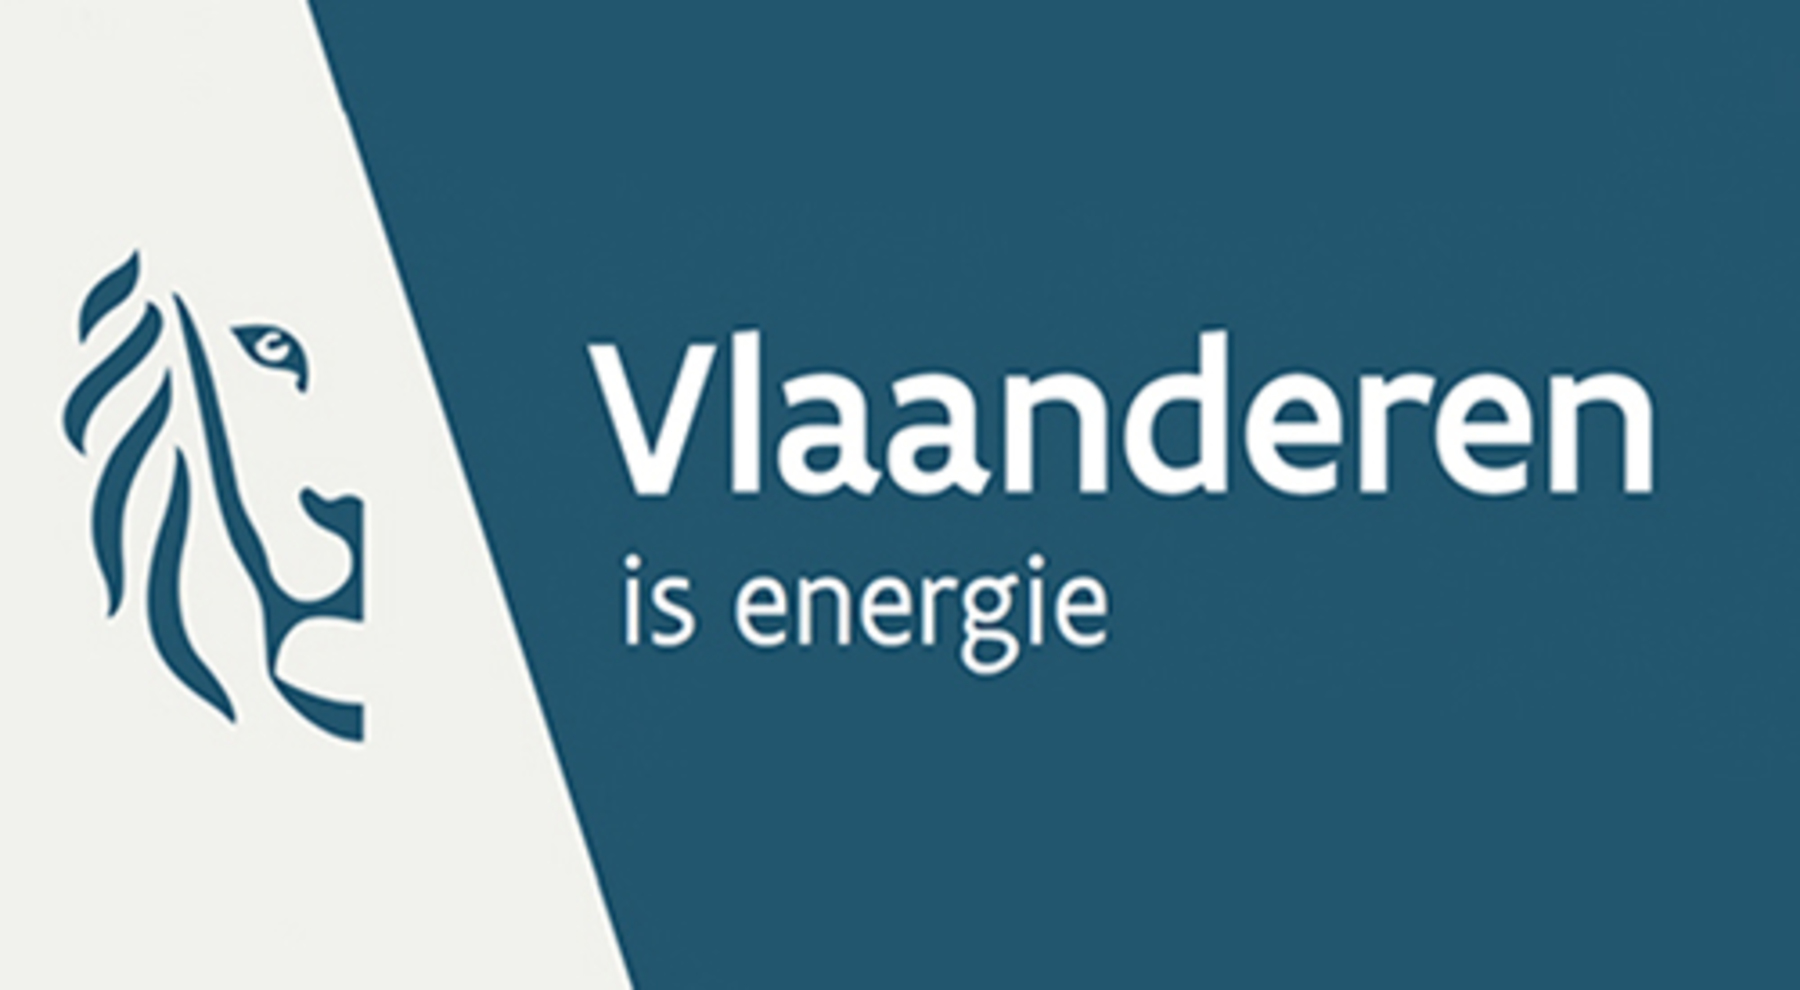 Vlaanderen is energie